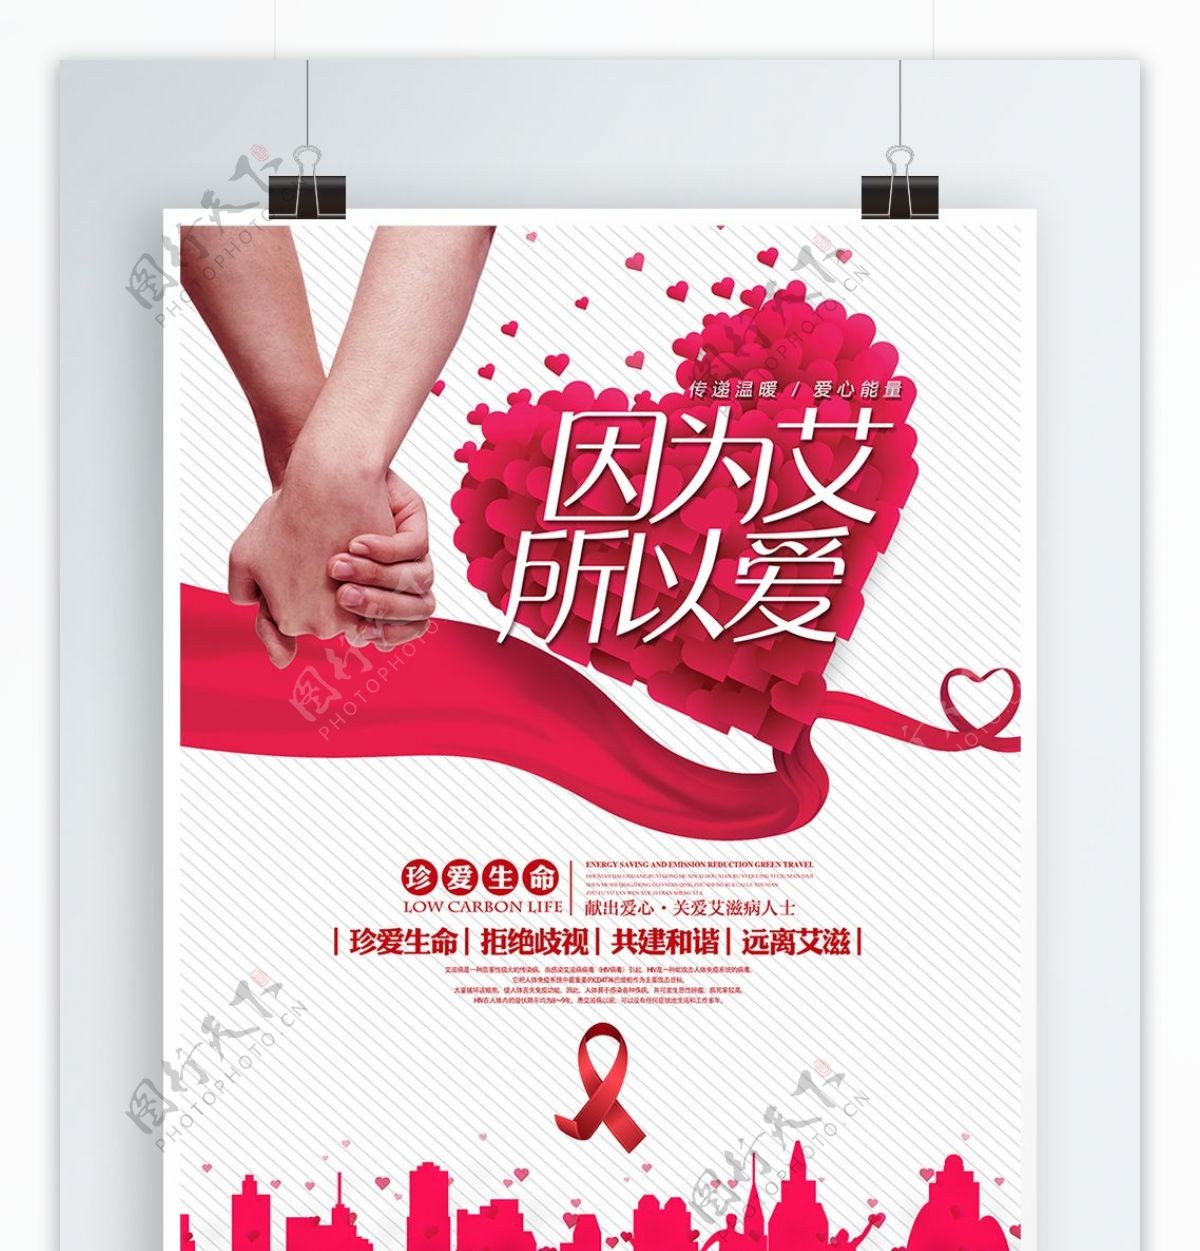 清新简约唯美防治艾滋病公益宣传海报展板